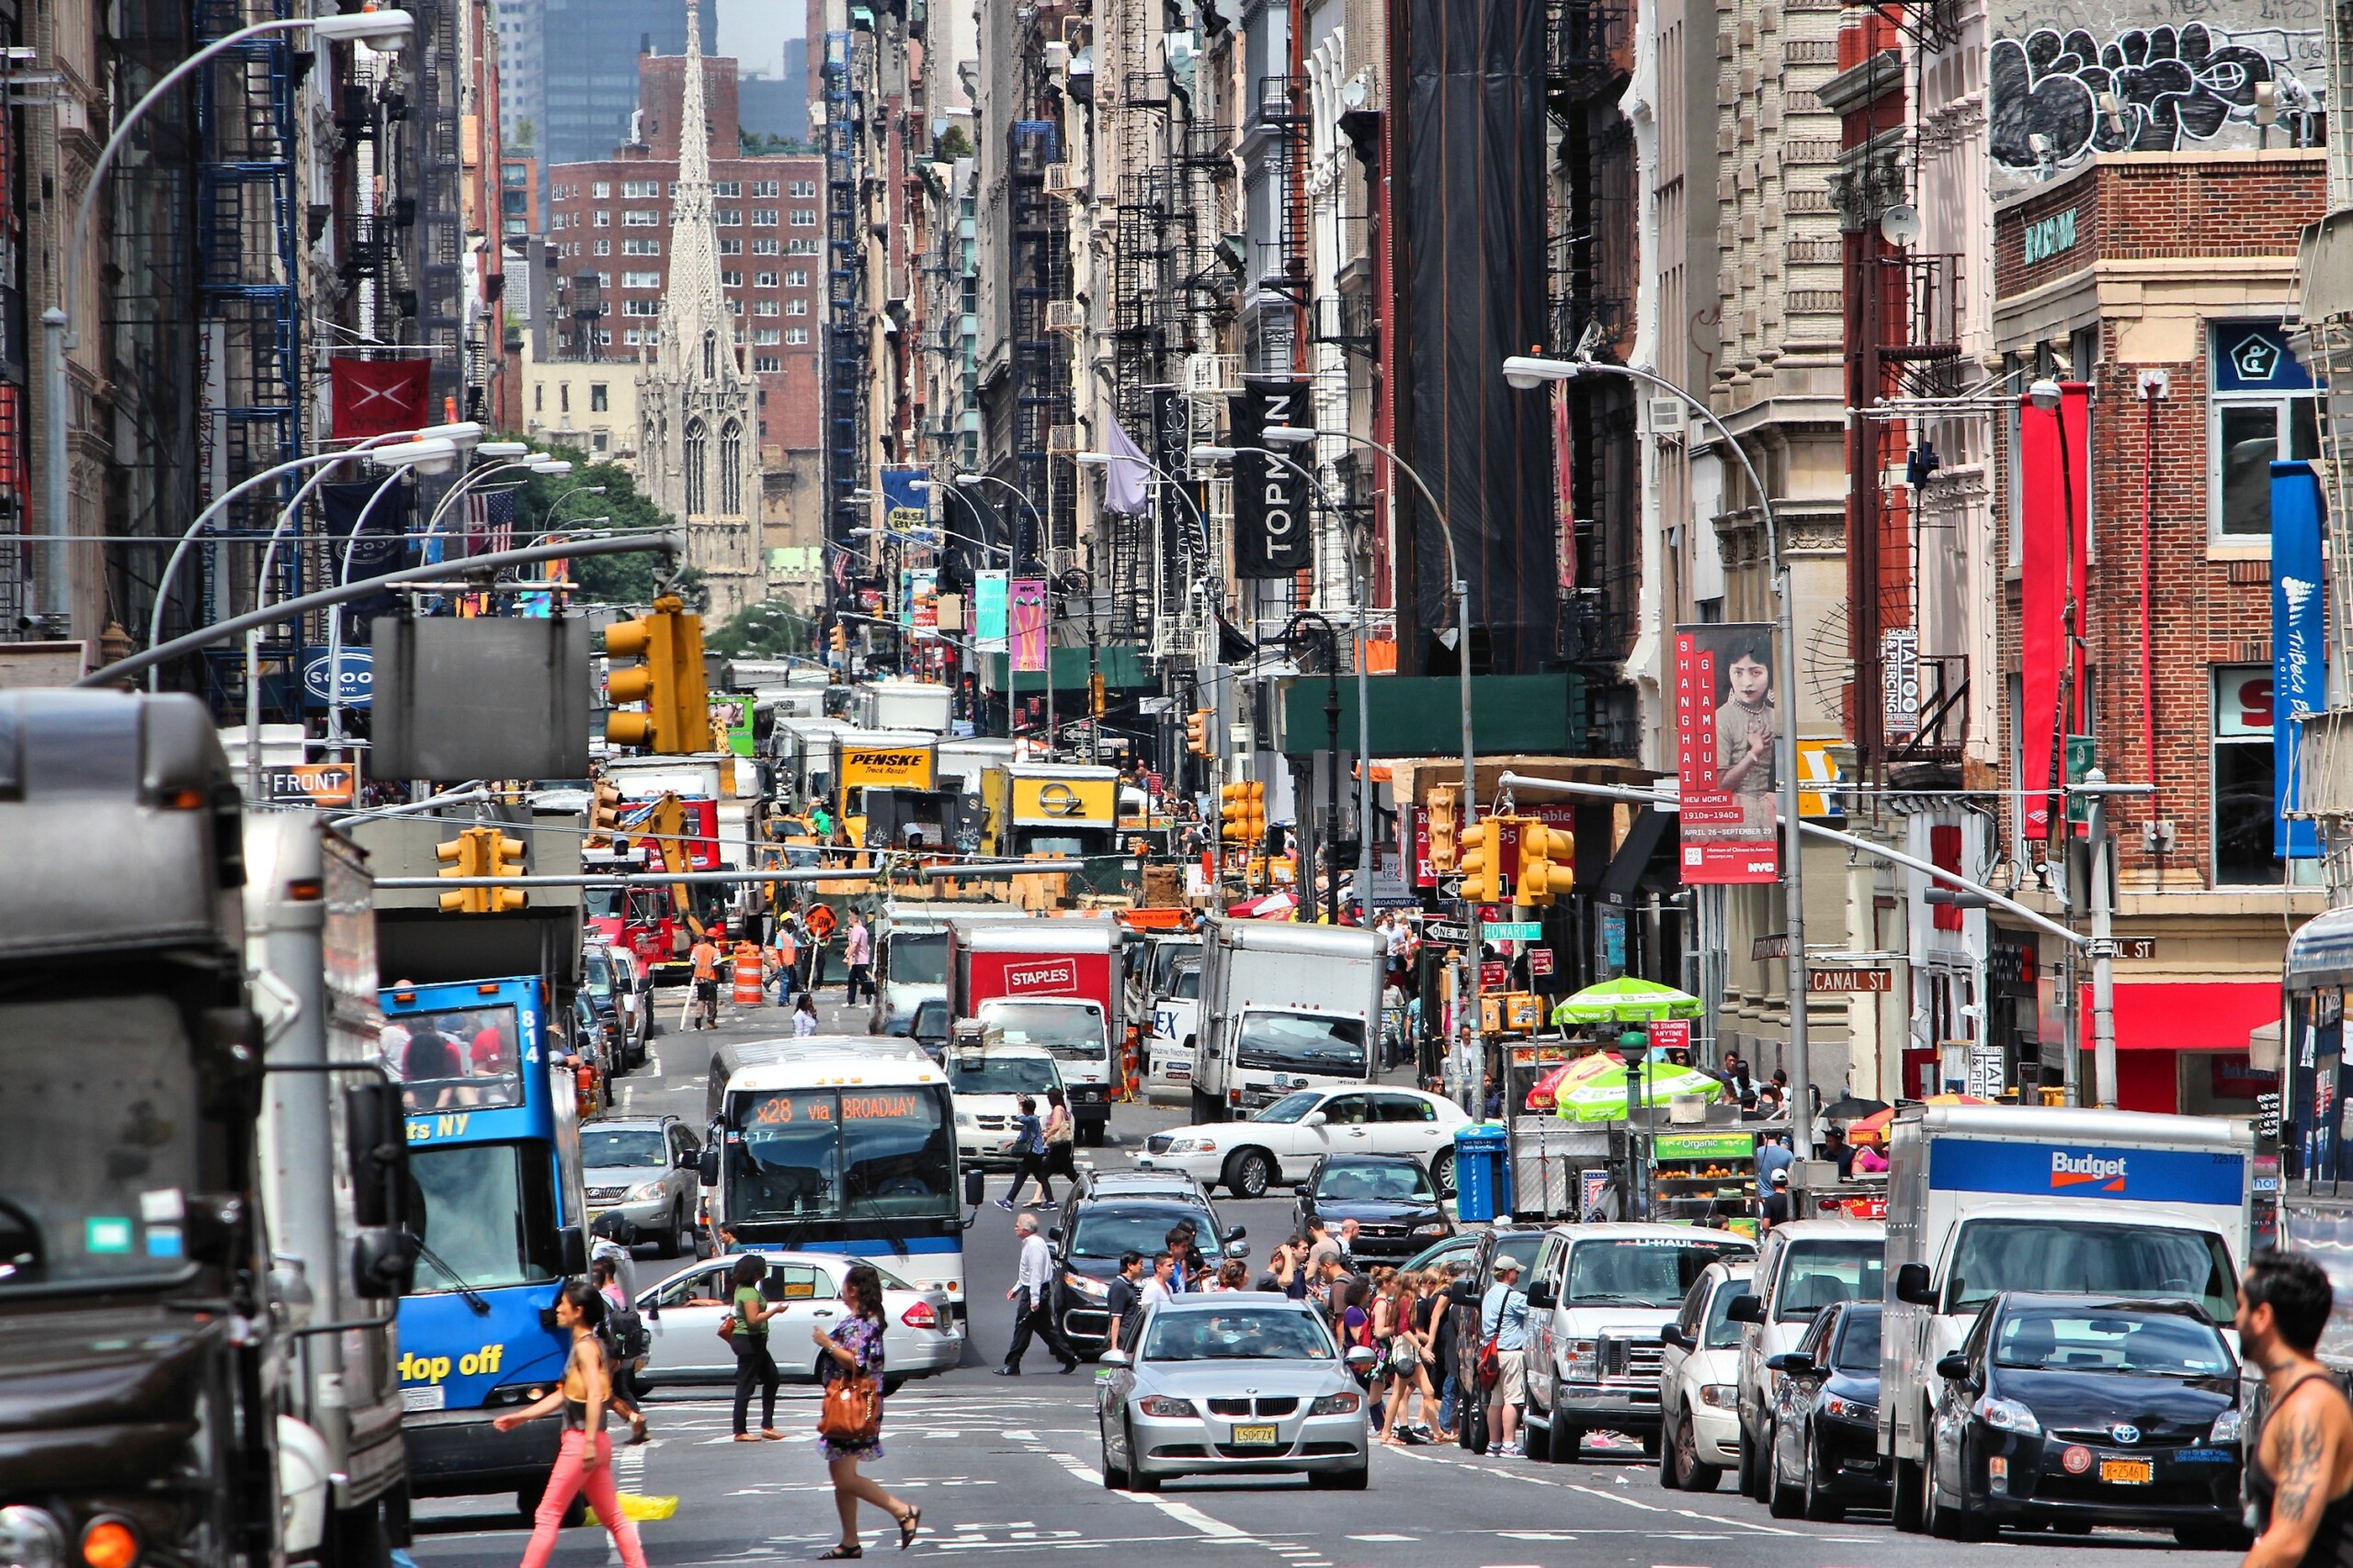 NOWY JORK, LIPIEC, - 4: Ludzie chodzą wzdłuż West Broadway na Lipu 4, 2013 w Tribeca okręgu, Nowy Jork. Prawie 19 milionów ludzi mieszka w obszarze metropolitalnym Nowego Jorku., licencja: shutterstock/By Tupungato